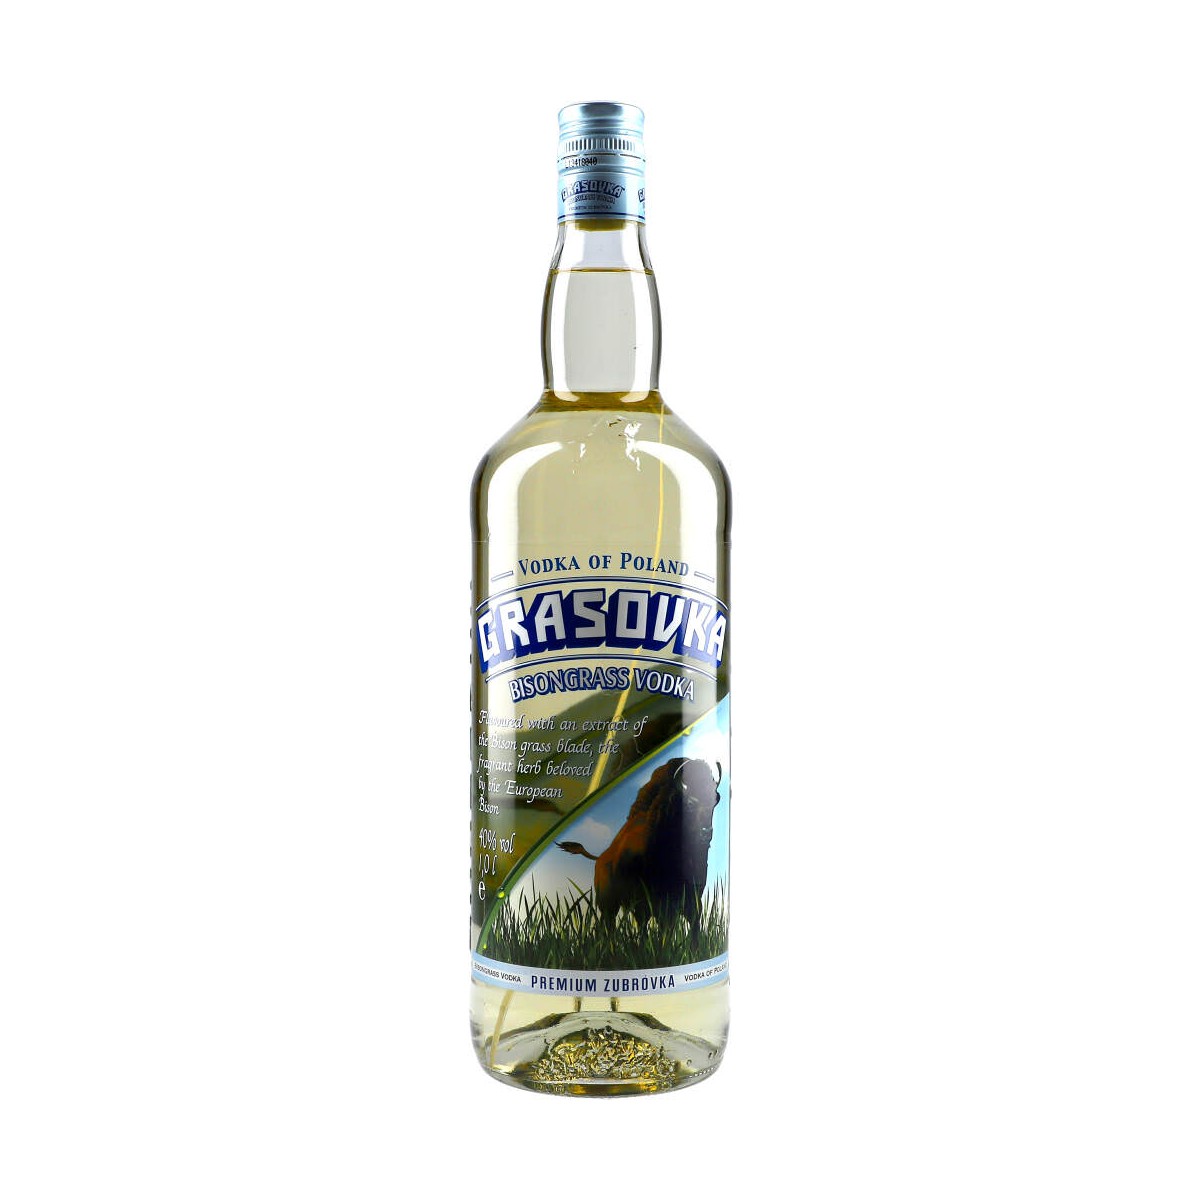 100cl 38% Grasovka Bisongrass Vodka